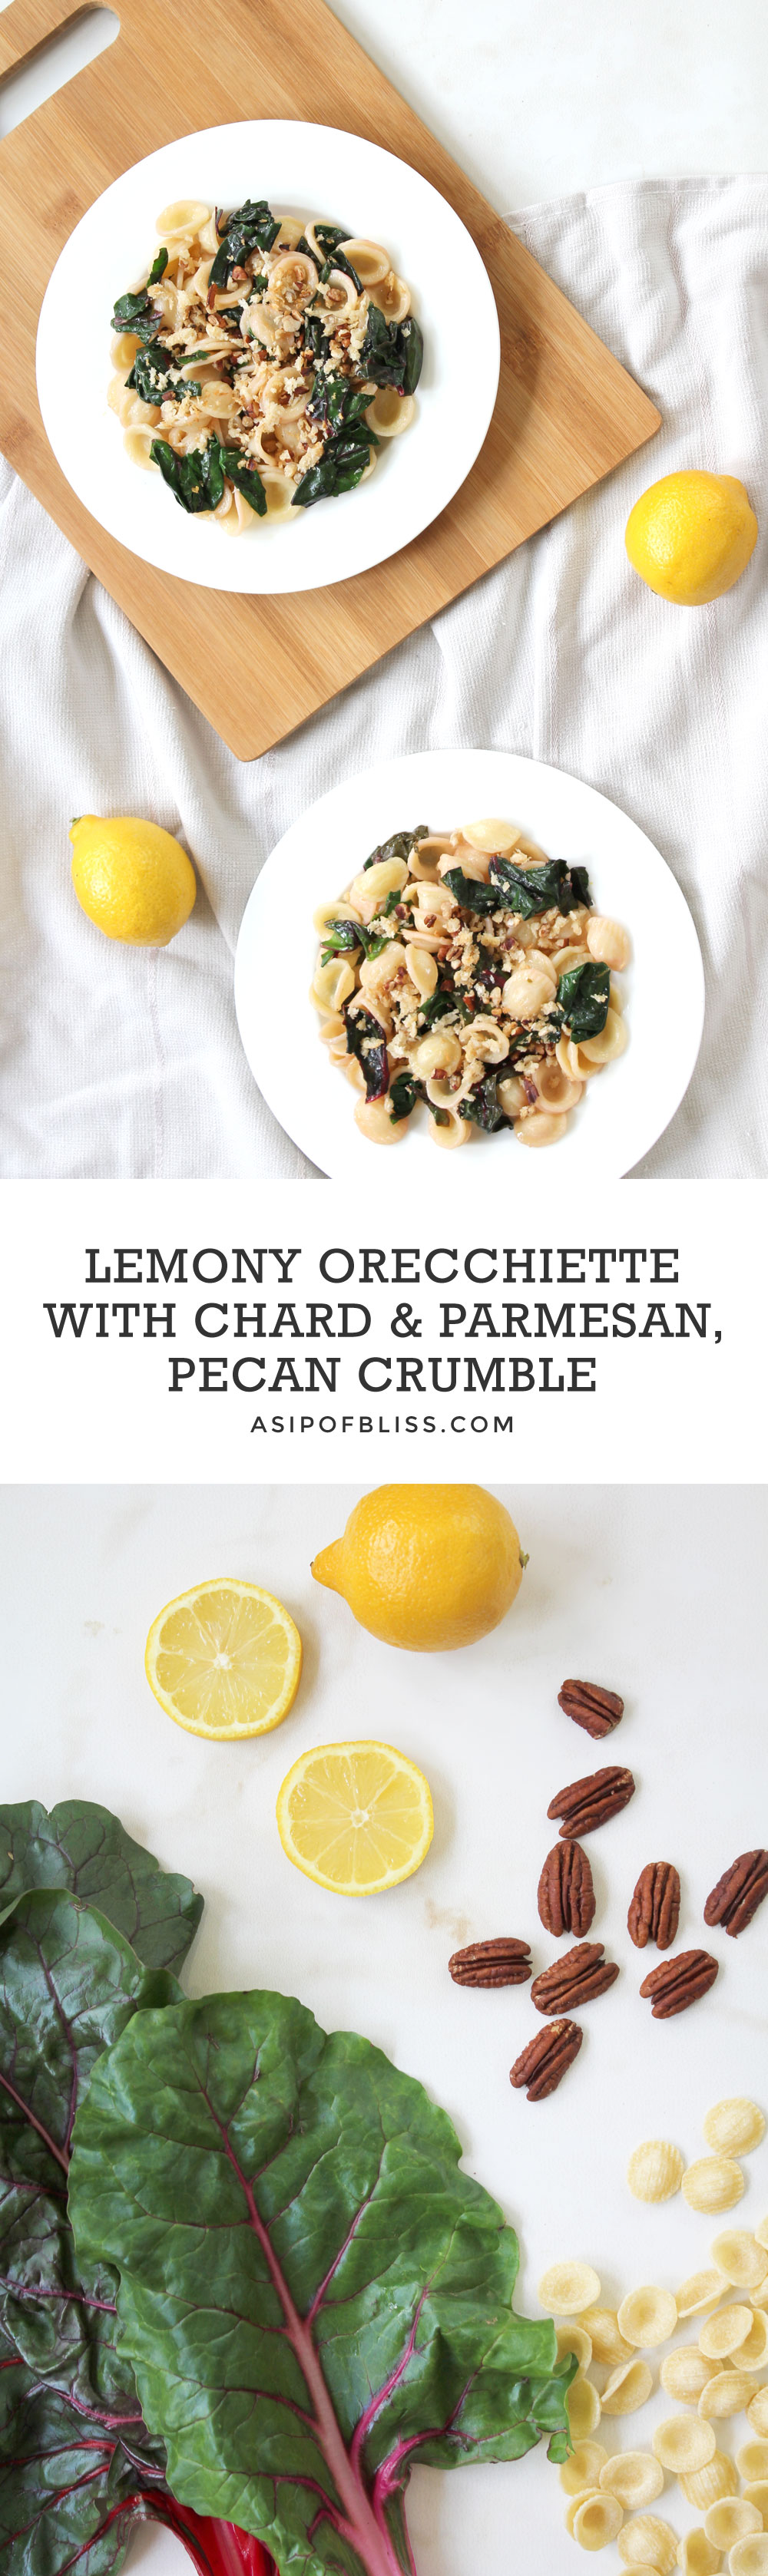 Lemony Orecchiette with Chard & Parmesan, Pecan Crumble